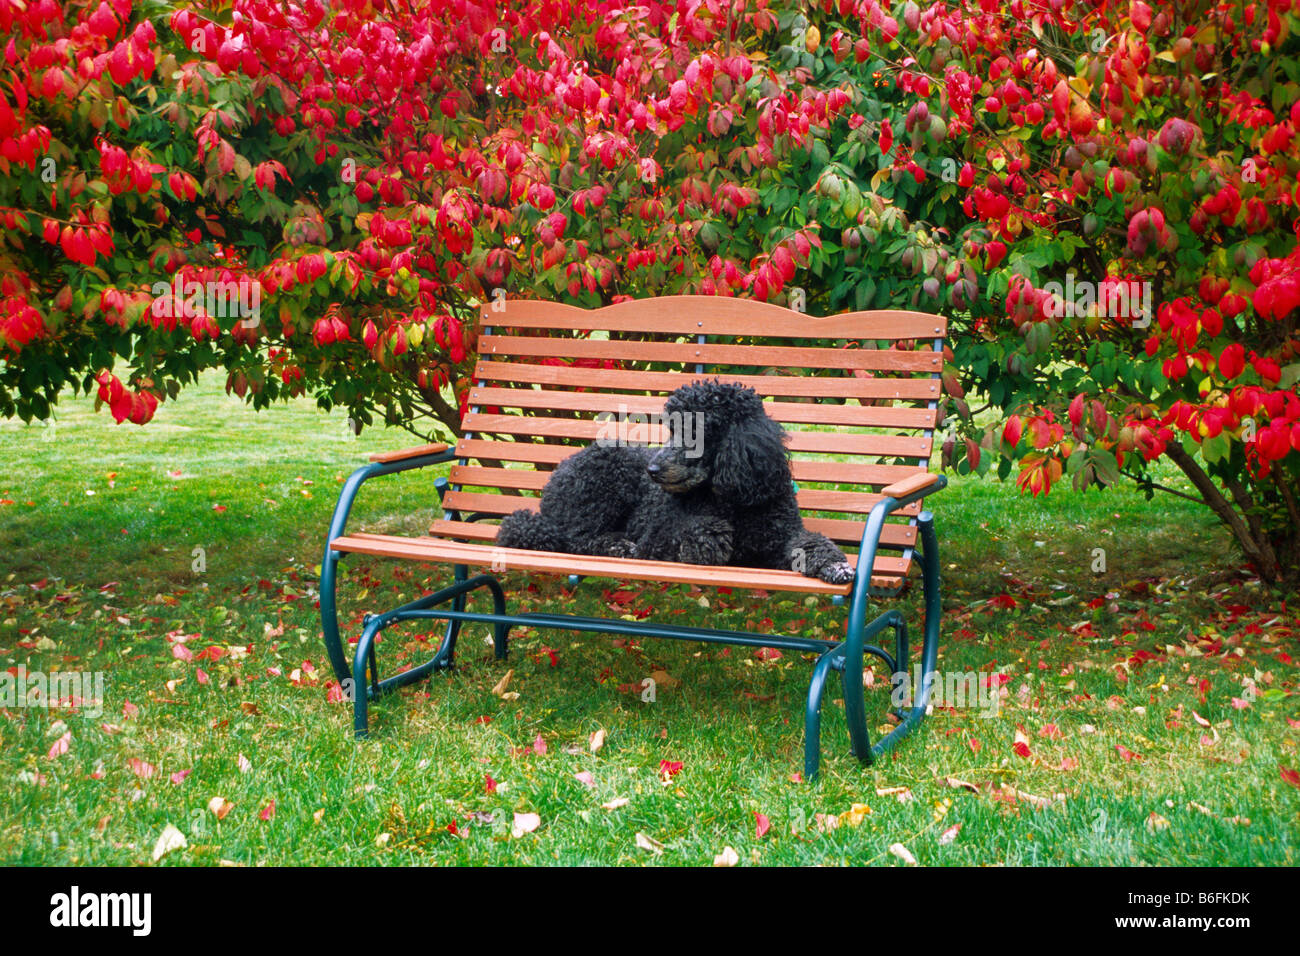 Caniche royal en appui sur le banc de jardin automne automne reste détendue vous détendre profiter joie couper les cheveux avaient besoin de repos paisible calme Banque D'Images